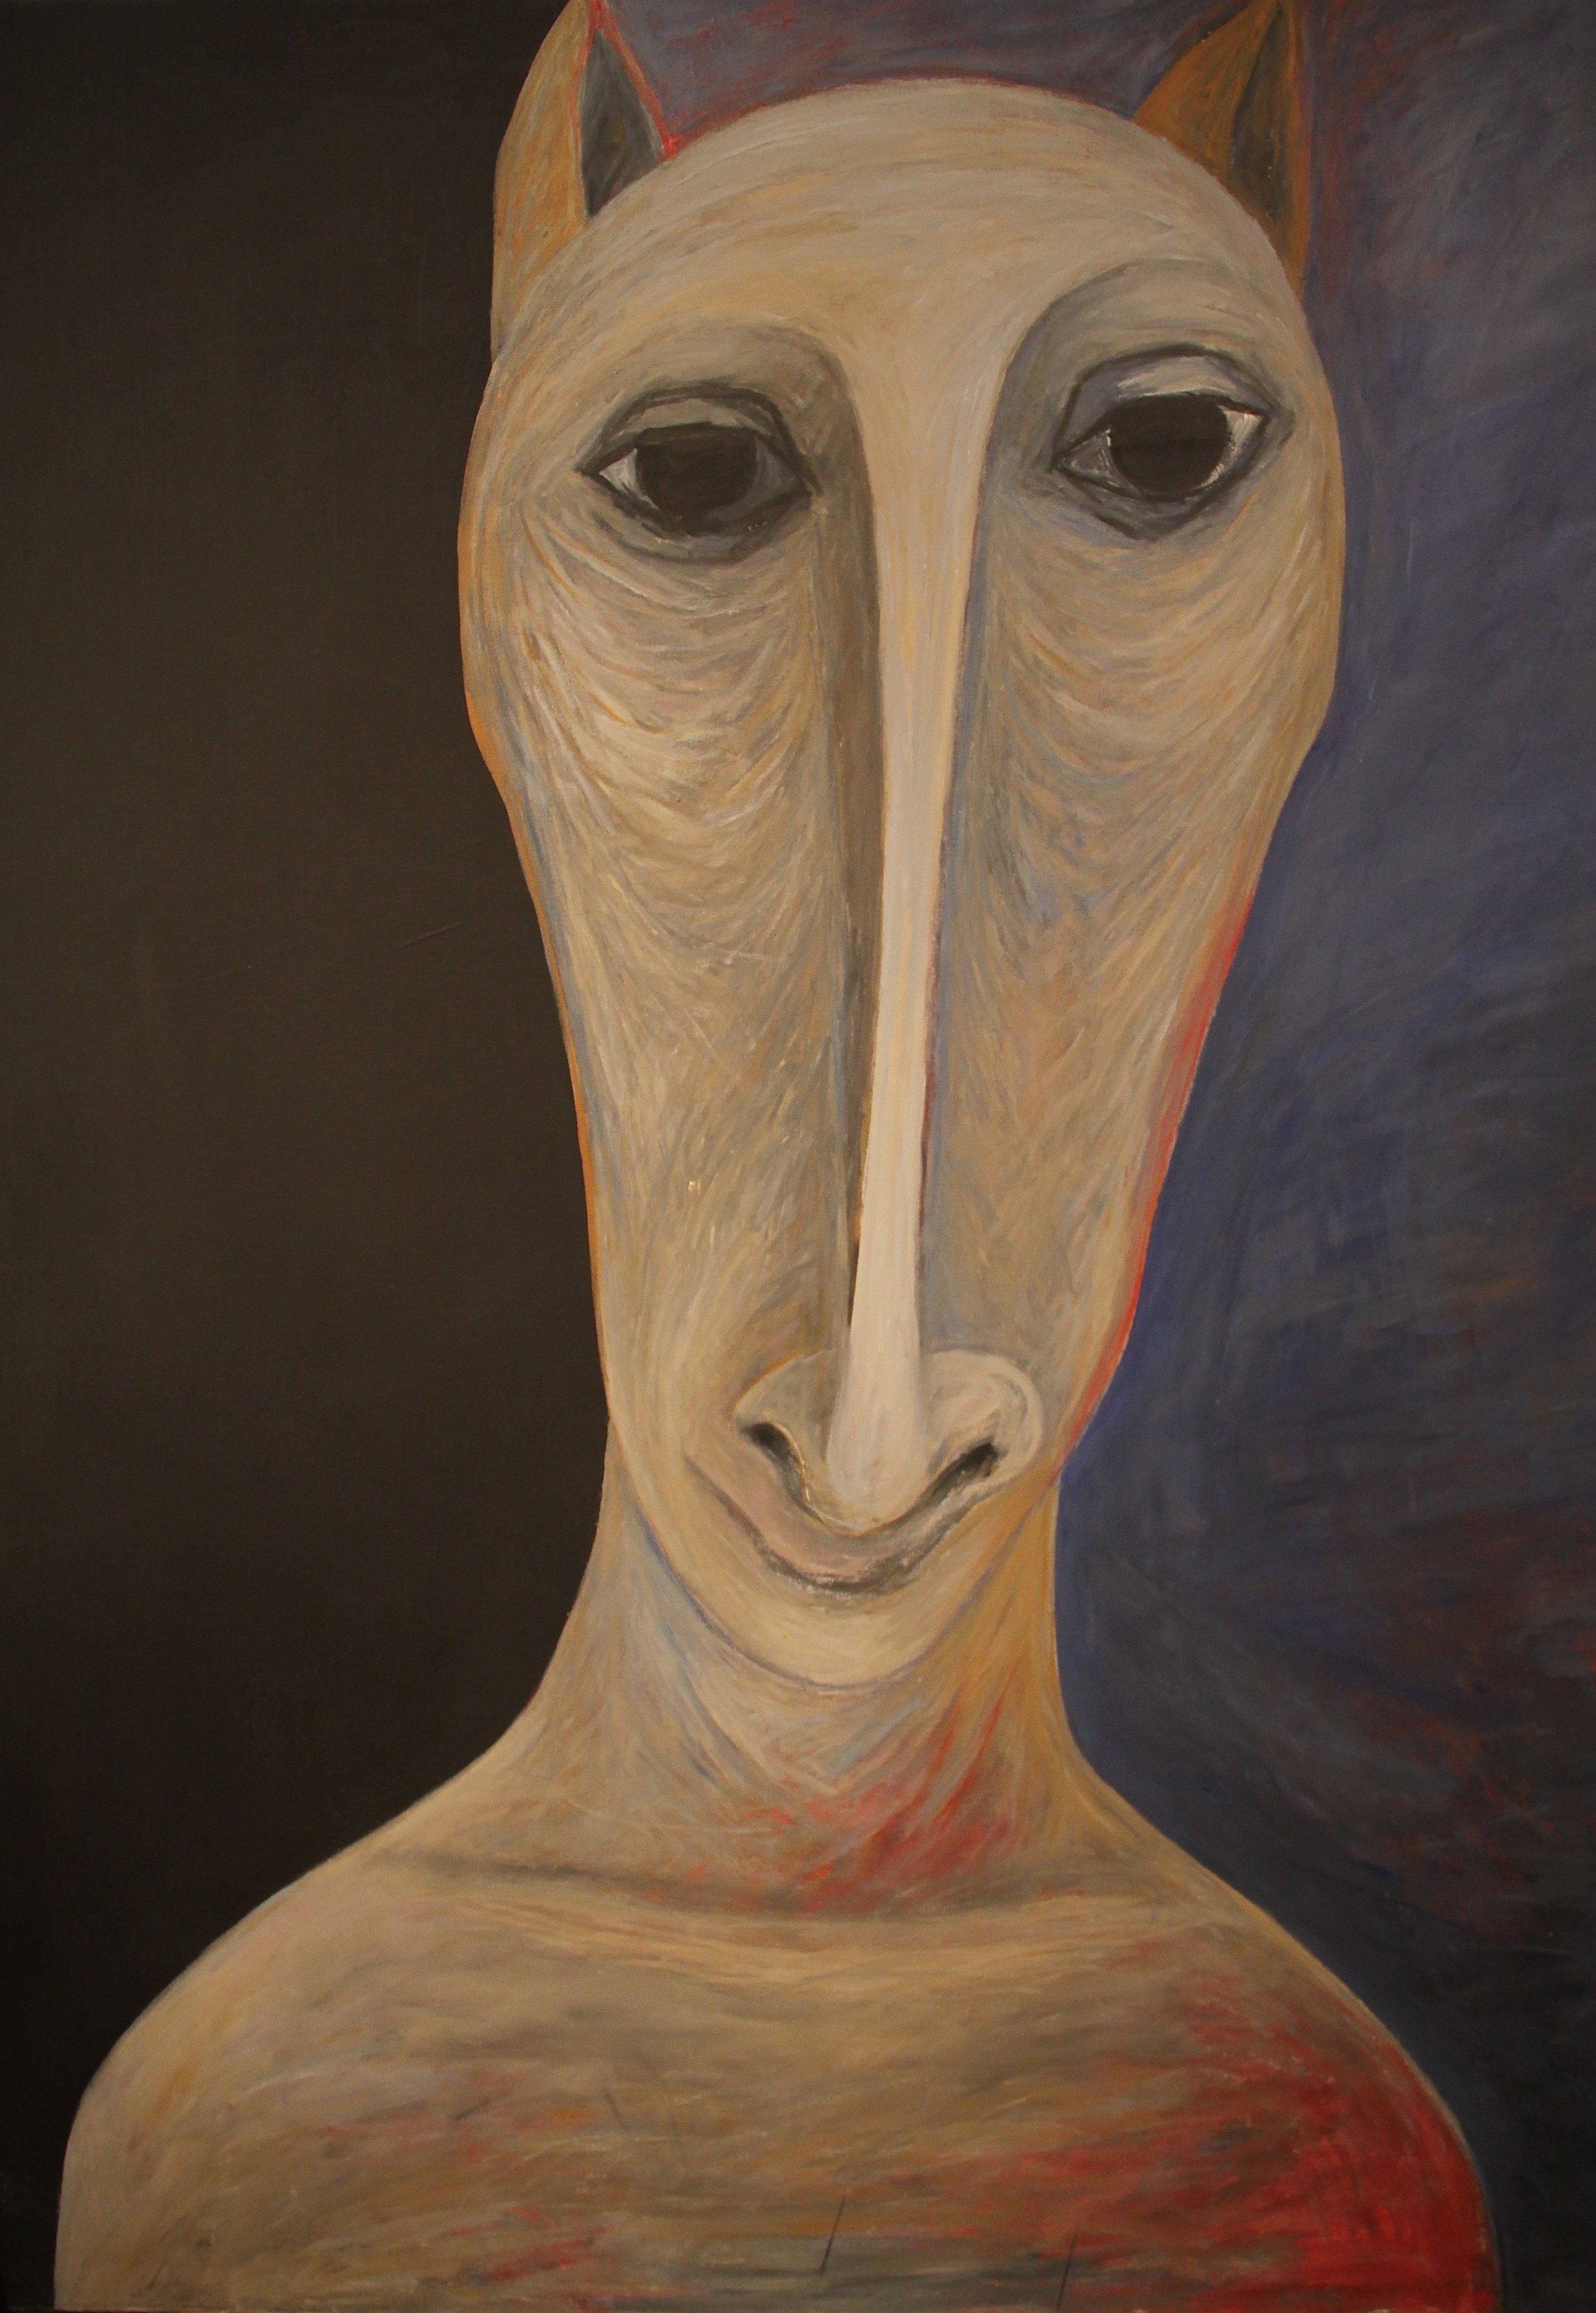  A Creature, 2007, Acrylic on canvas, 163 x 127 cm   